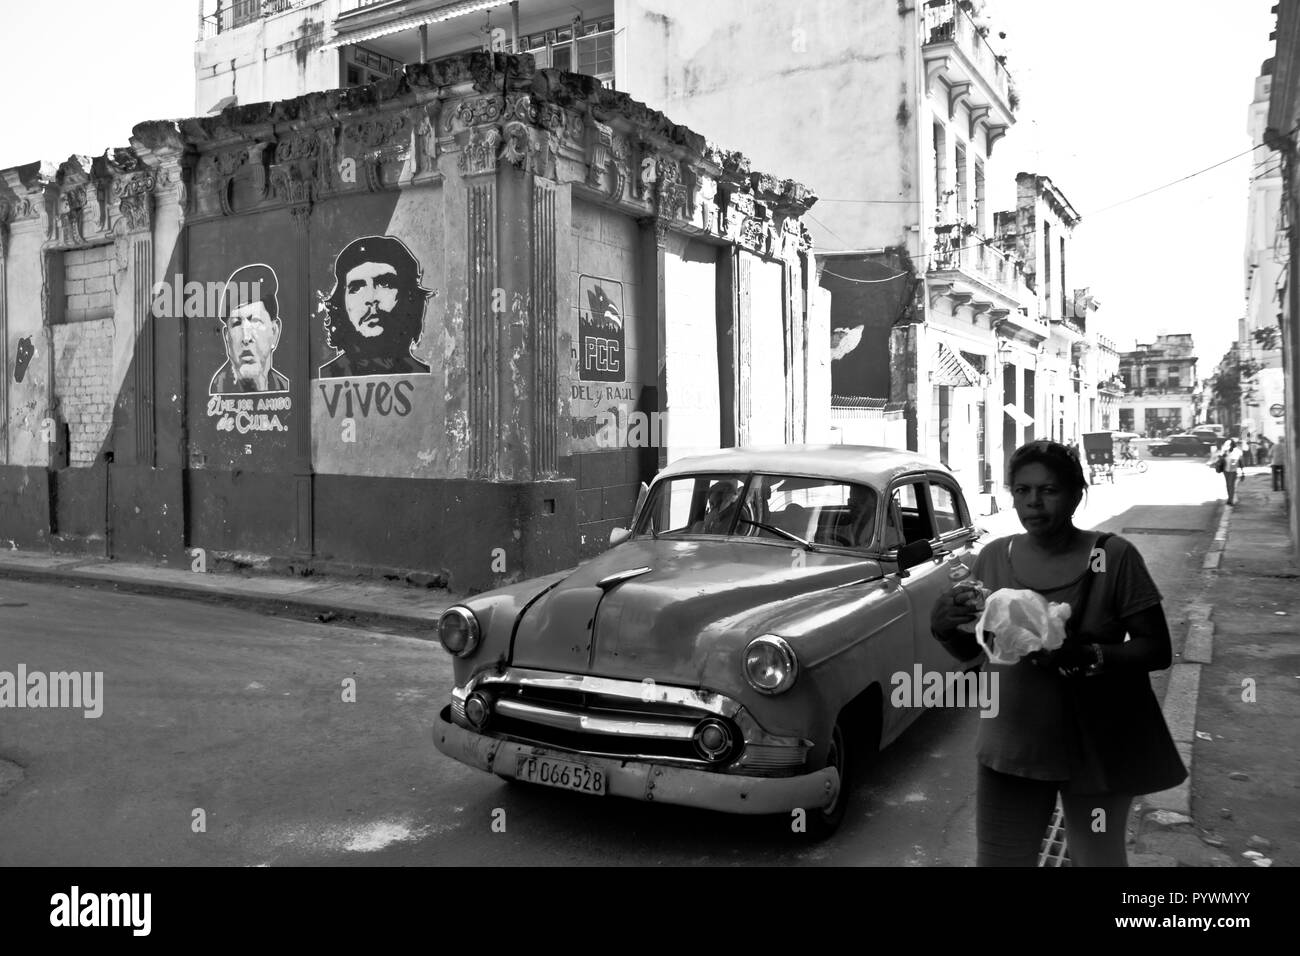 La Havane, Cuba, île des Caraïbes sous le régime communiste. Il a les plages de sable blanc, avec des champs de tabac, cigares et légendaire rhum. Banque D'Images